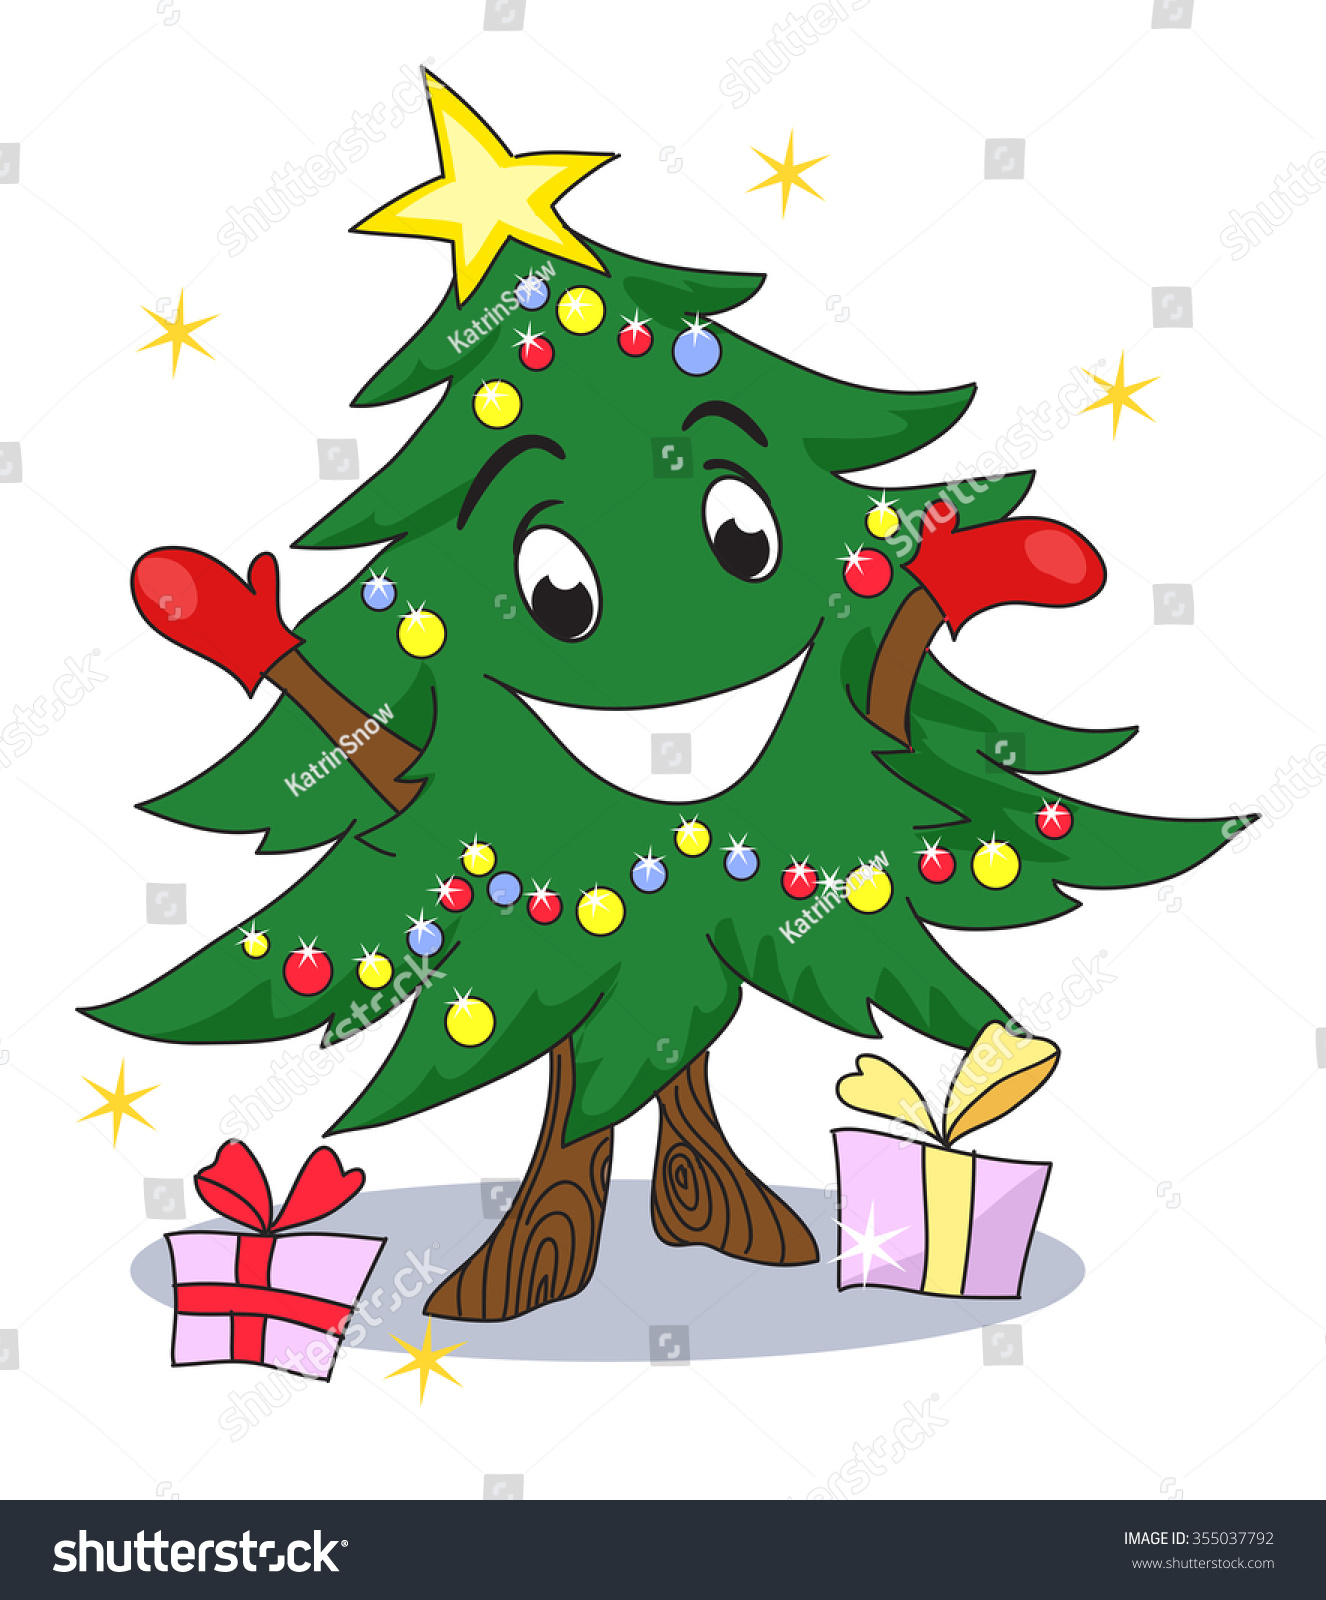 Christmas Tree Character. Funny Animated Christmas Tree, Gives You ...